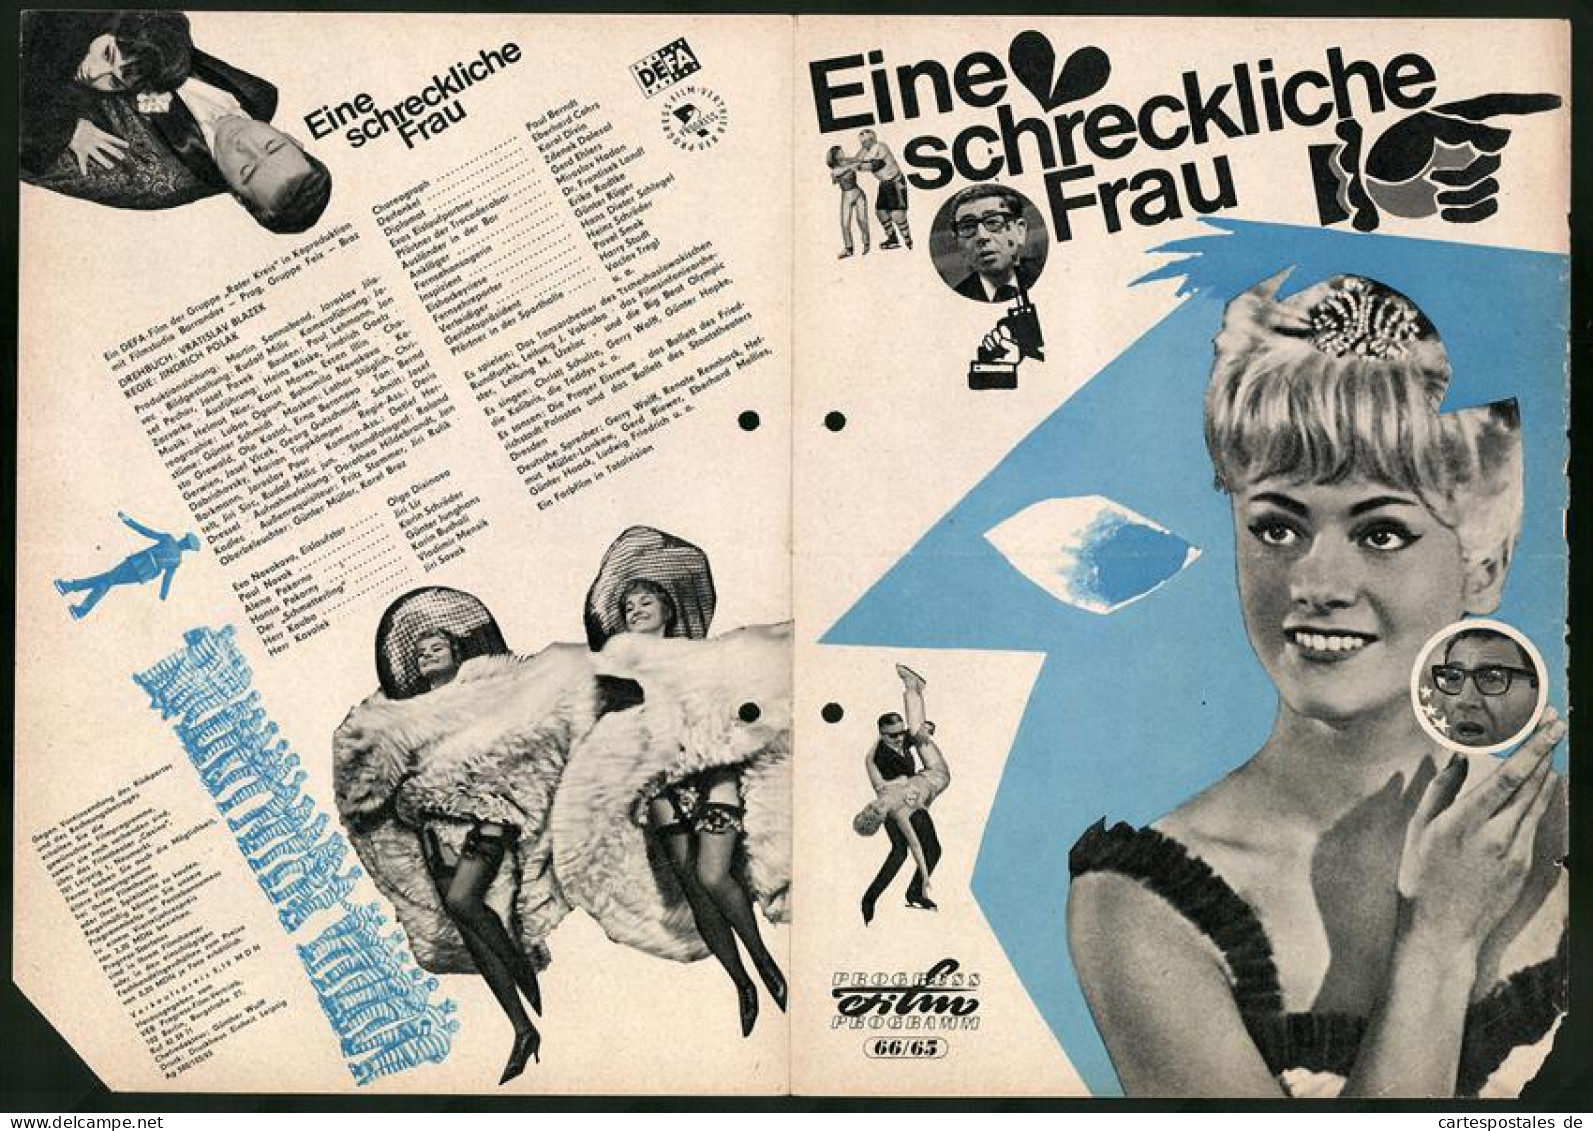 Filmprogramm PFP Nr. 66 /65, Eine Schreckliche Frau, Paul Berndt, Eberhard Cohrs, Regie: Jindrich Polak  - Magazines